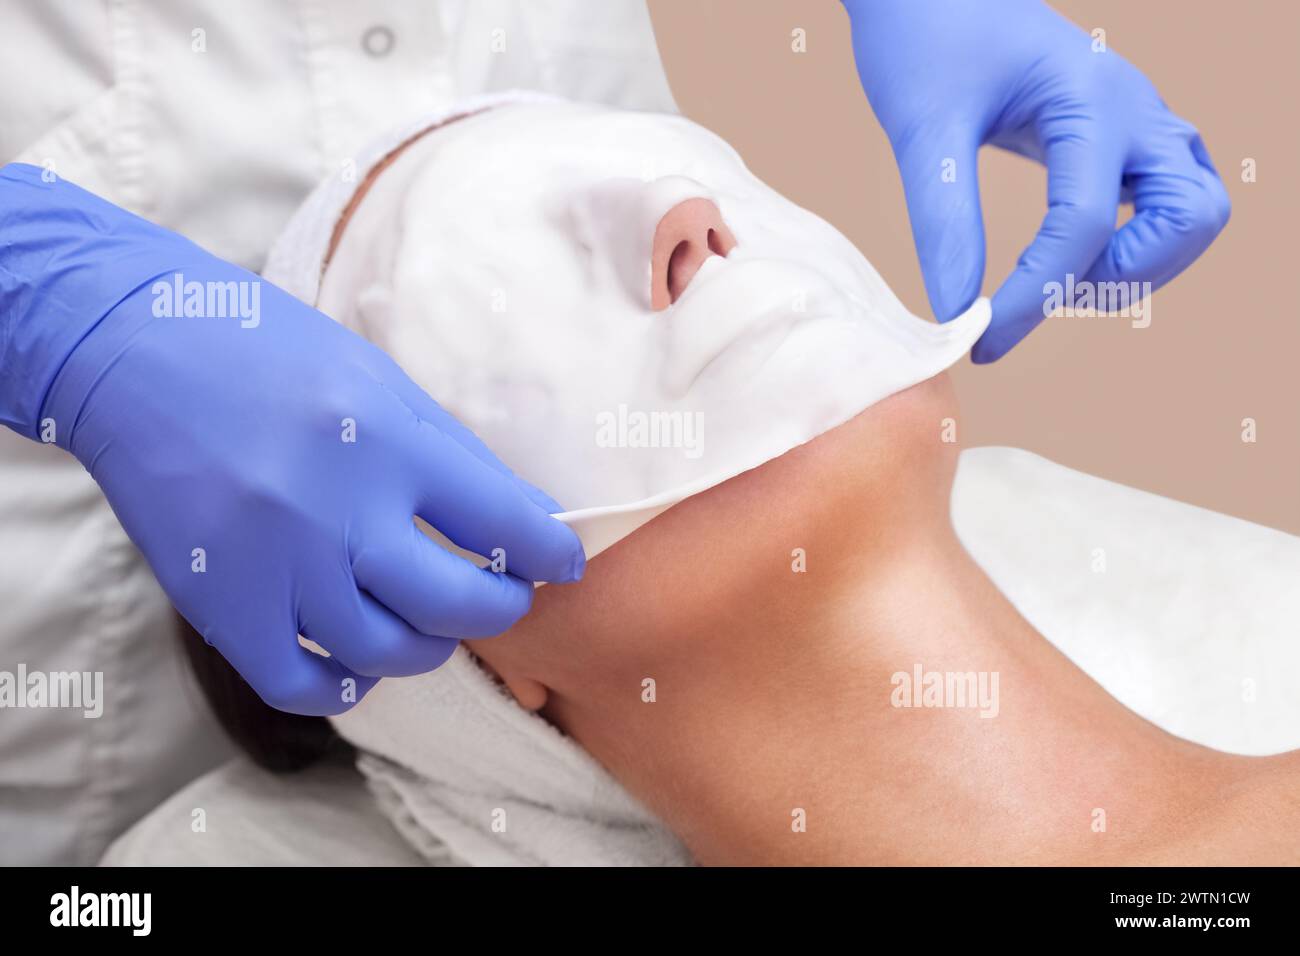 Le cosmétologue pour la procédure de nettoyage et d'hydratation de la peau, en appliquant un masque alginique sur le visage d'une jeune femme dans le salon de beauté.Cosmetolo Banque D'Images